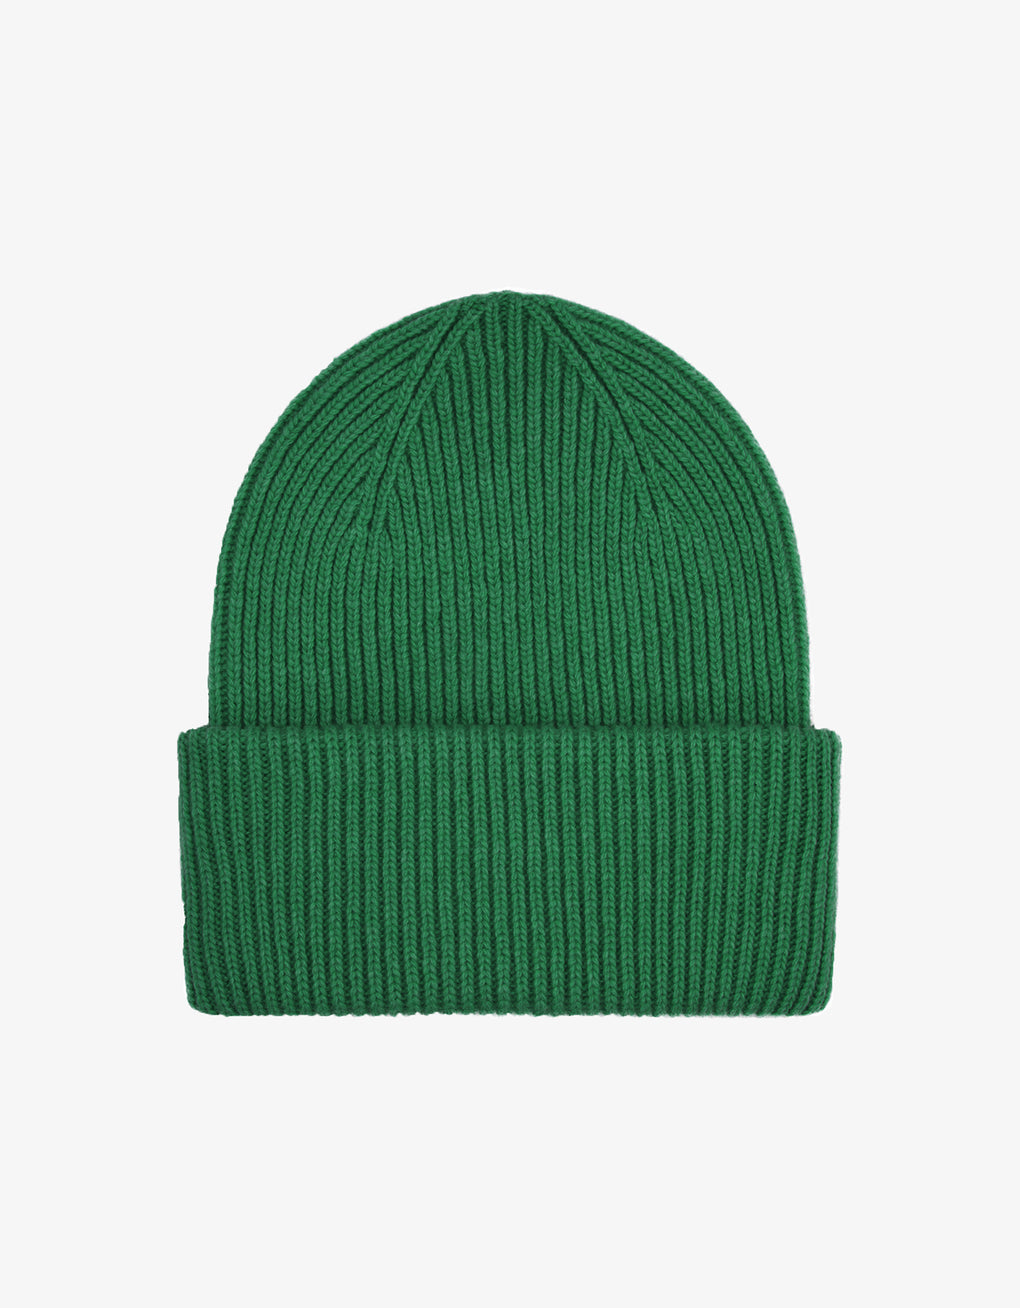 Merino wool hat - kelly green